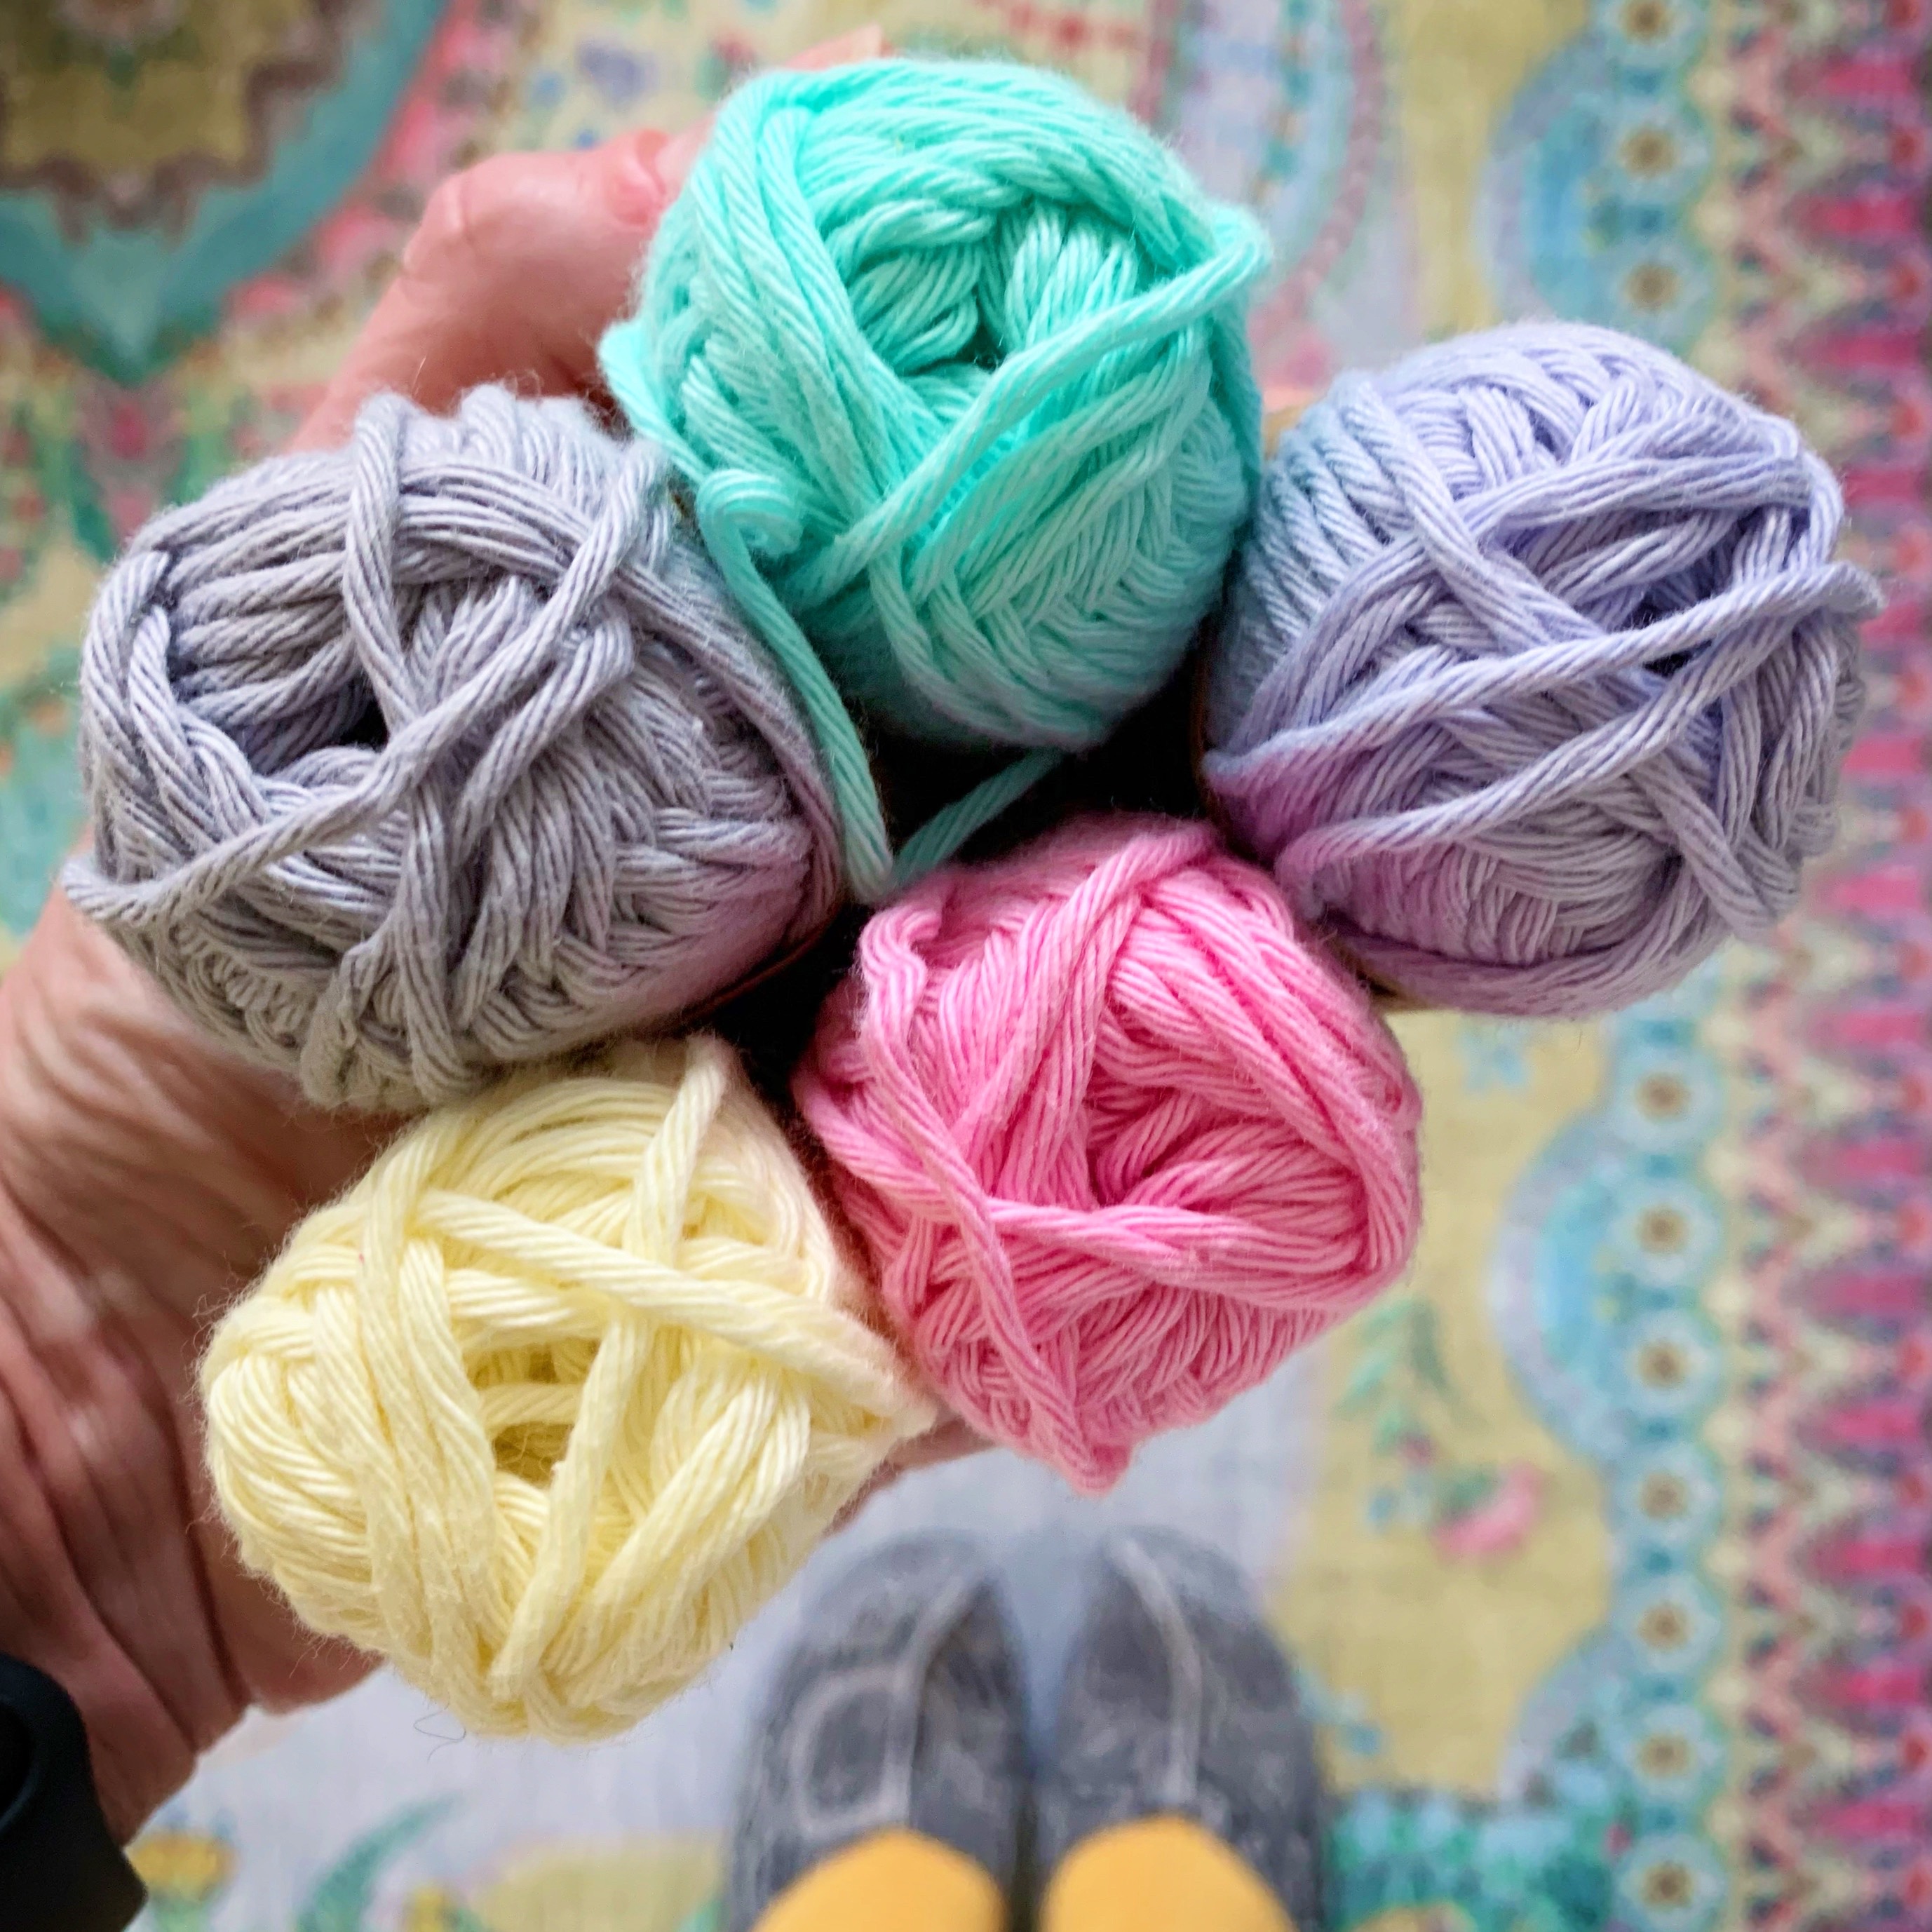 Yarn It! - Knitting & Crochet Journal - My Secret Garden